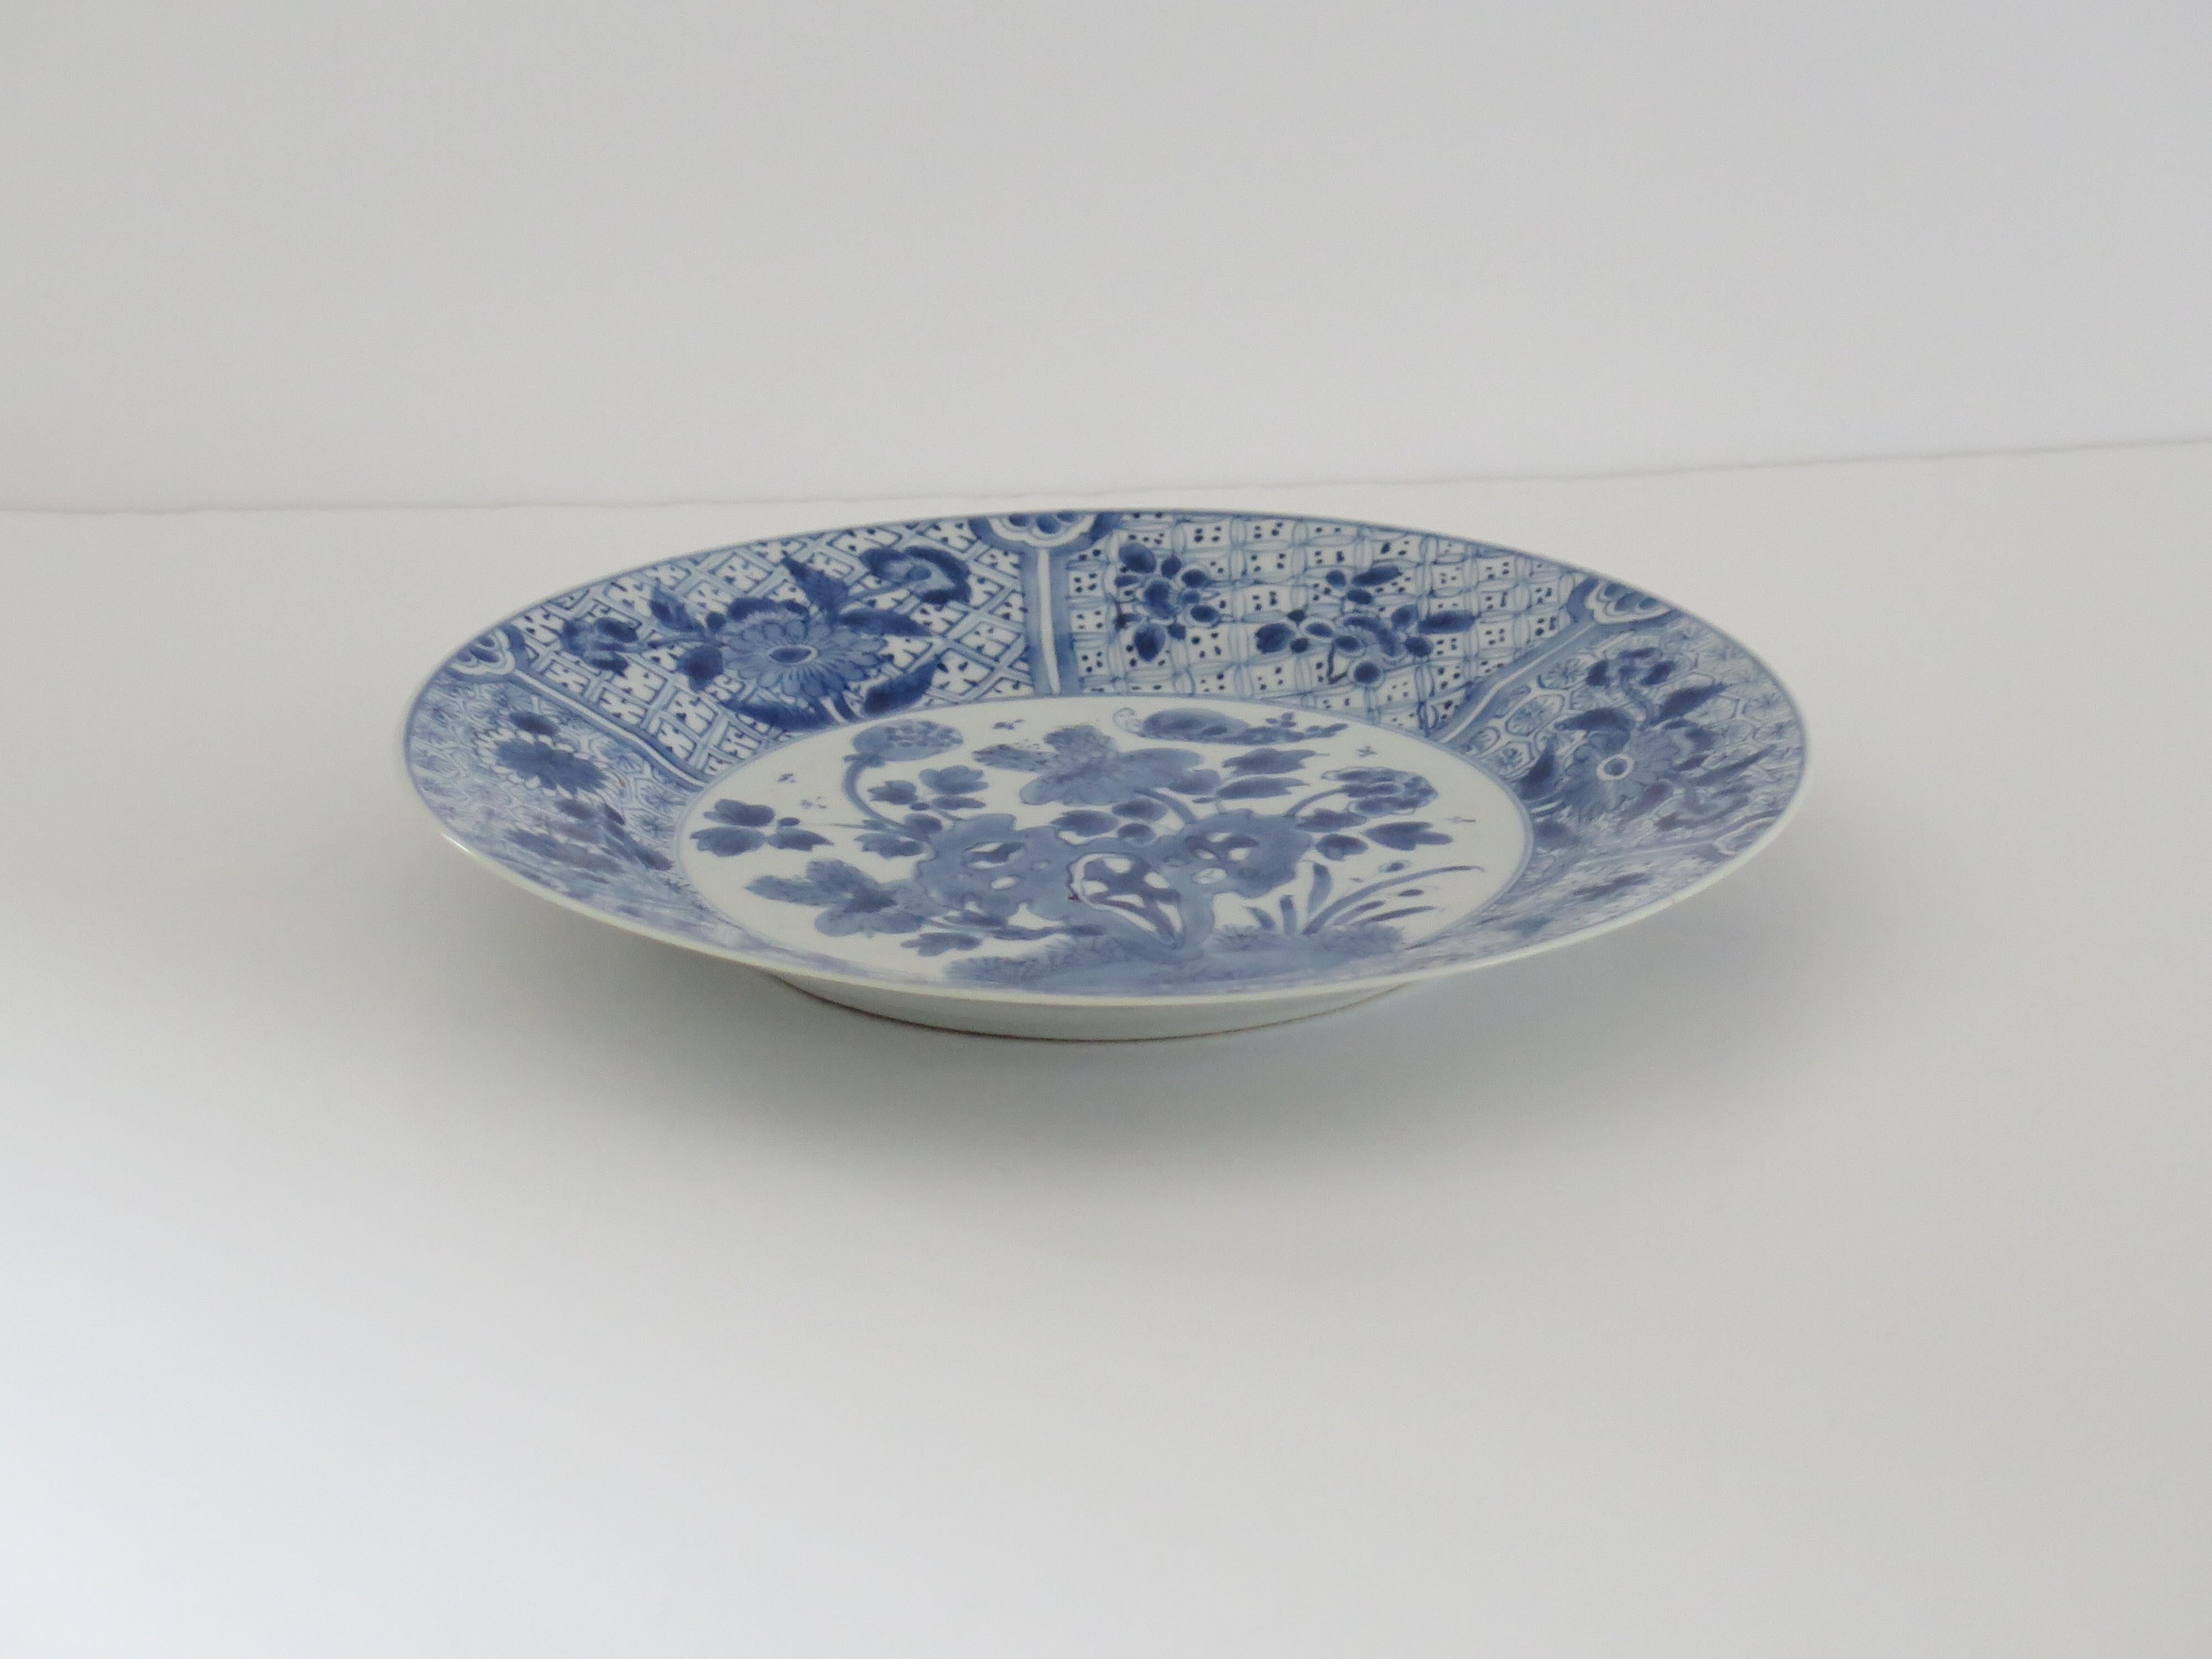 Il s'agit d'un grand plat ou d'une assiette en porcelaine chinoise bleu et blanc, peint à la main, de la période Qing, Kangxi, 1662-1722.

L'assiette / le plat est finement empoté avec un bord de base soigneusement coupé et une belle glaçure riche